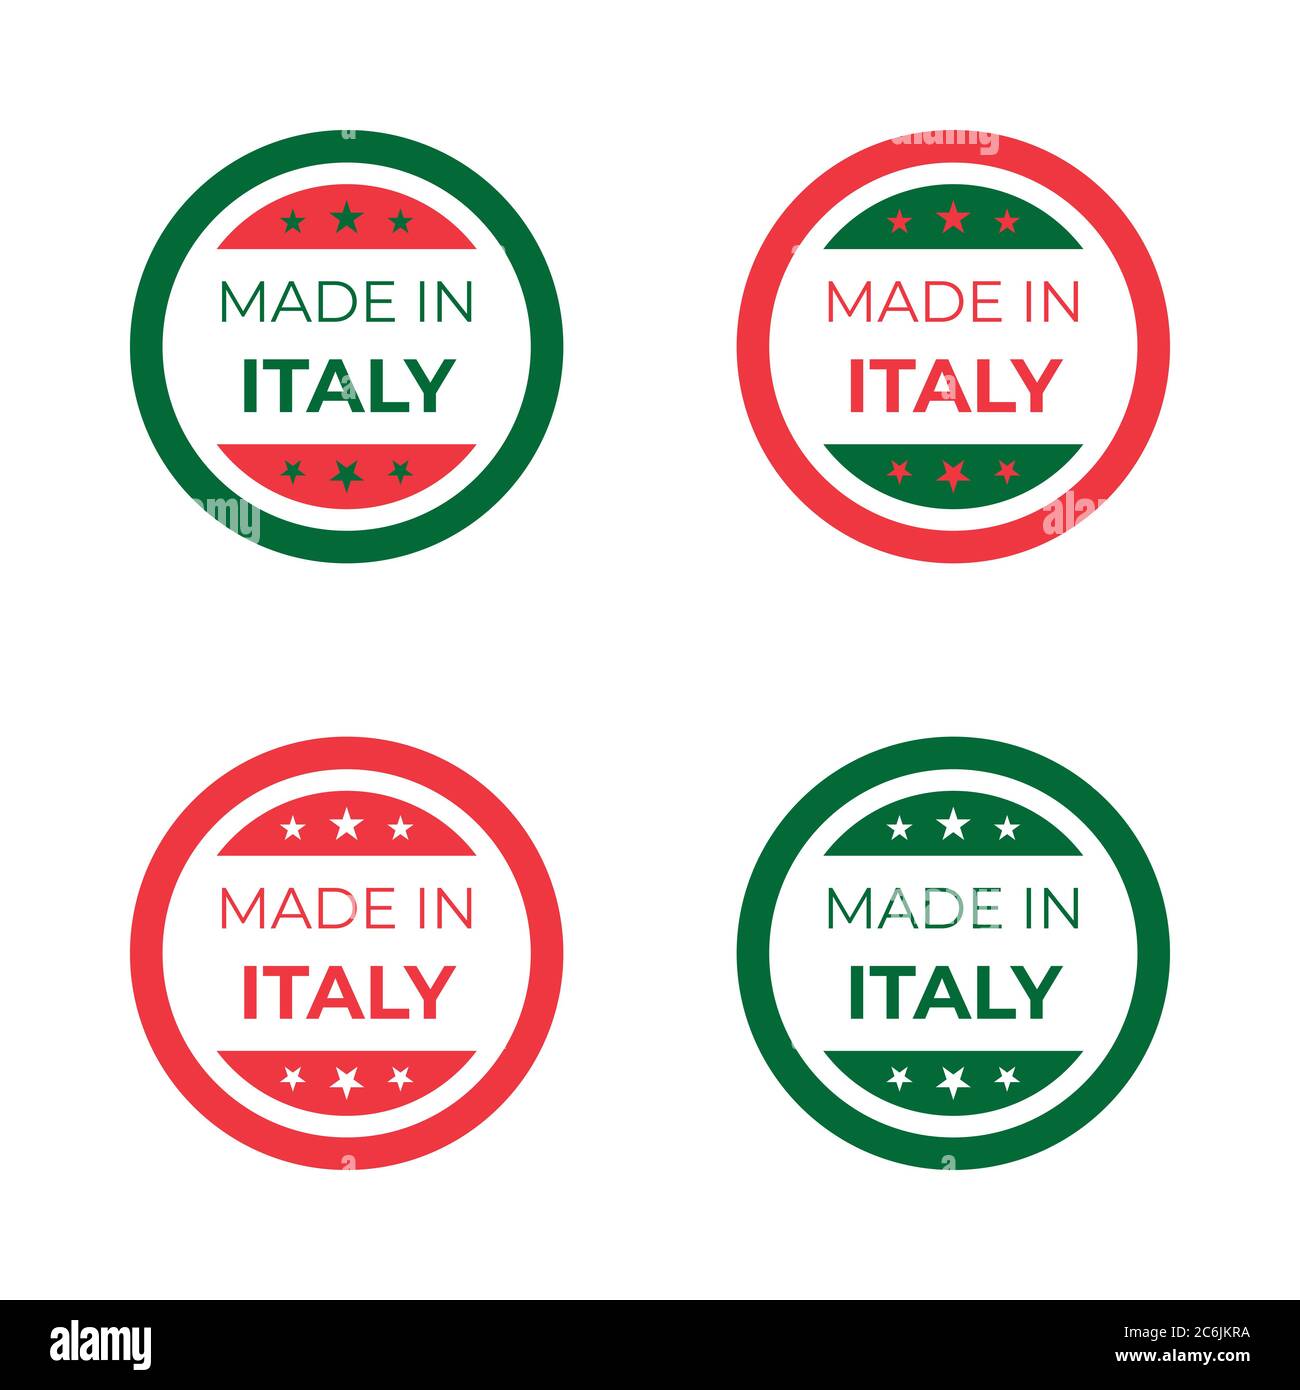 Illustrazione del design del simbolo e del segno made in Italy per l'etichetta del prodotto basata sulla bandiera nazionale italiana rossa e verde Illustrazione Vettoriale